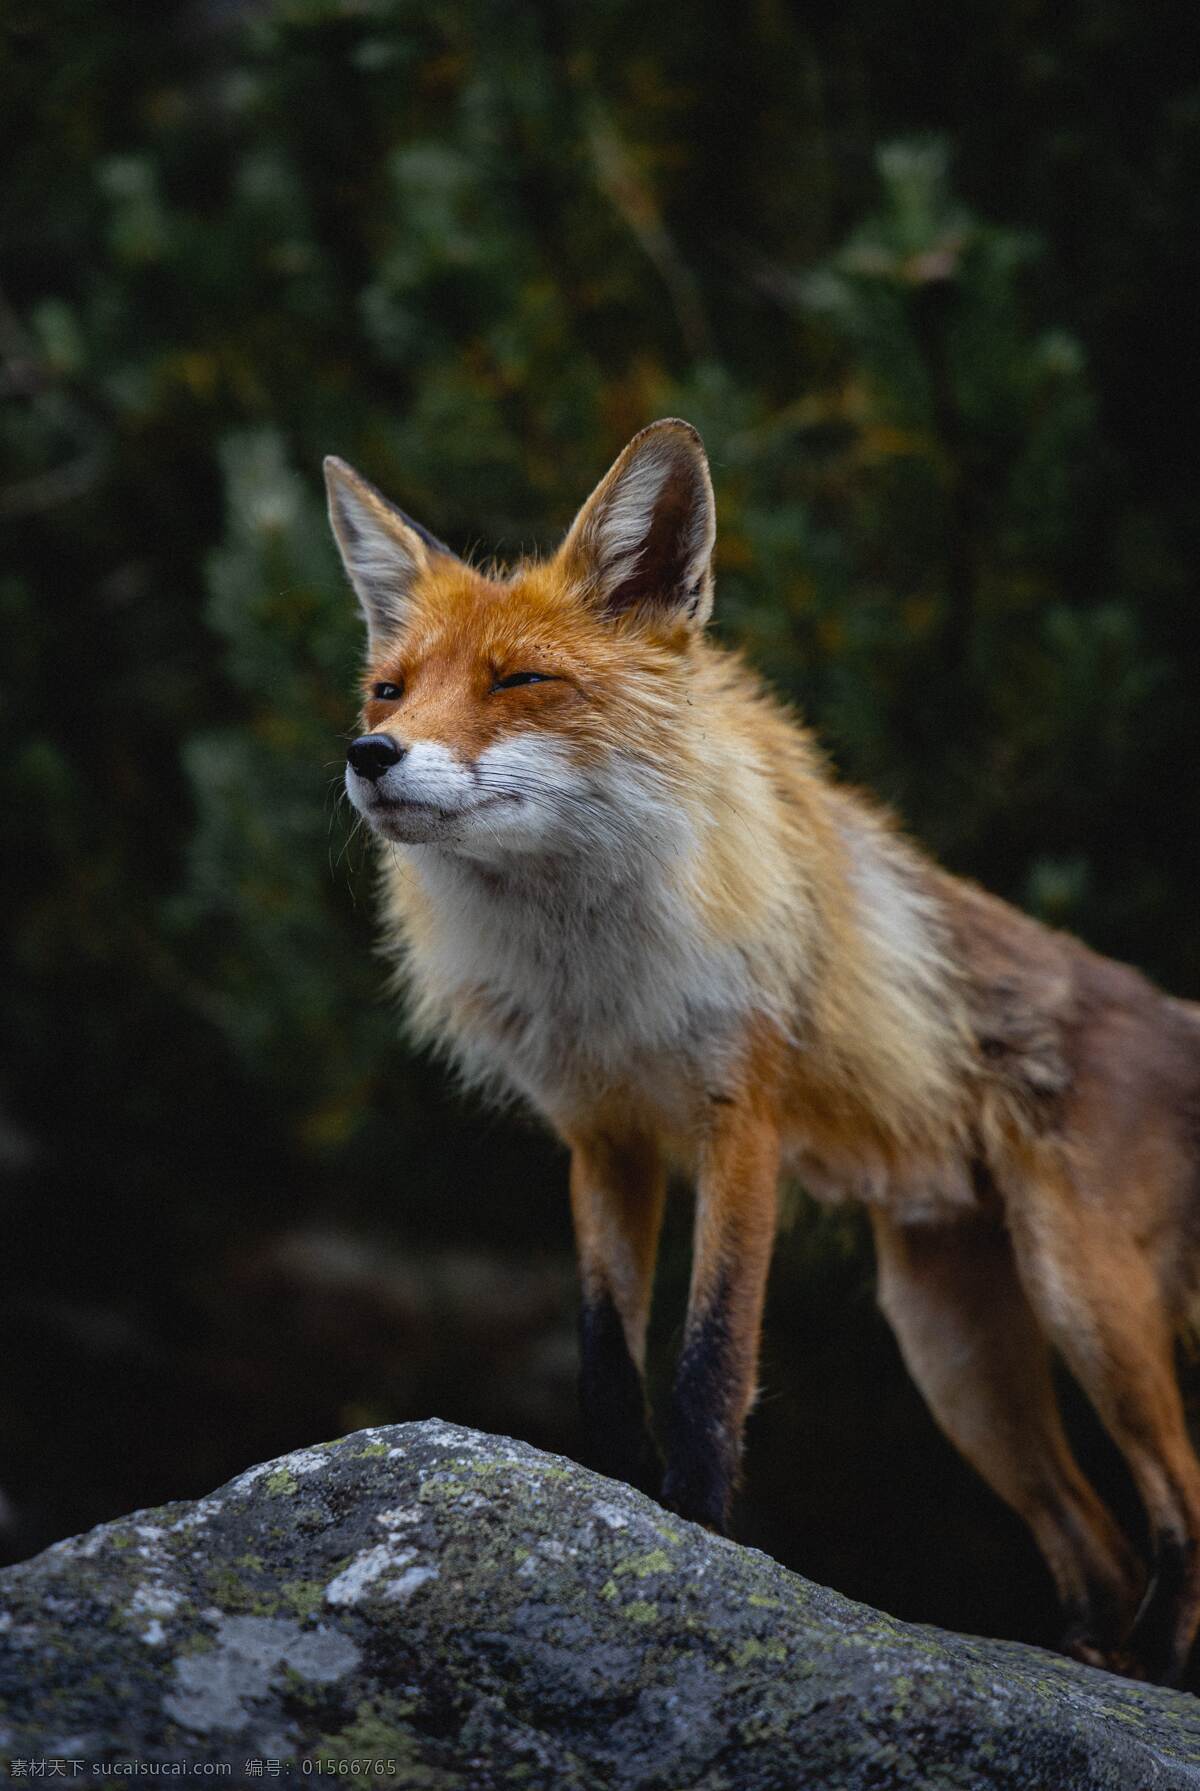 动物狐狸图片 雪域森林 狐狸 自然风光 唯美风景 手机桌面壁纸 广告设计素材 摄影jpg 高清大图 生物世界 野生动物